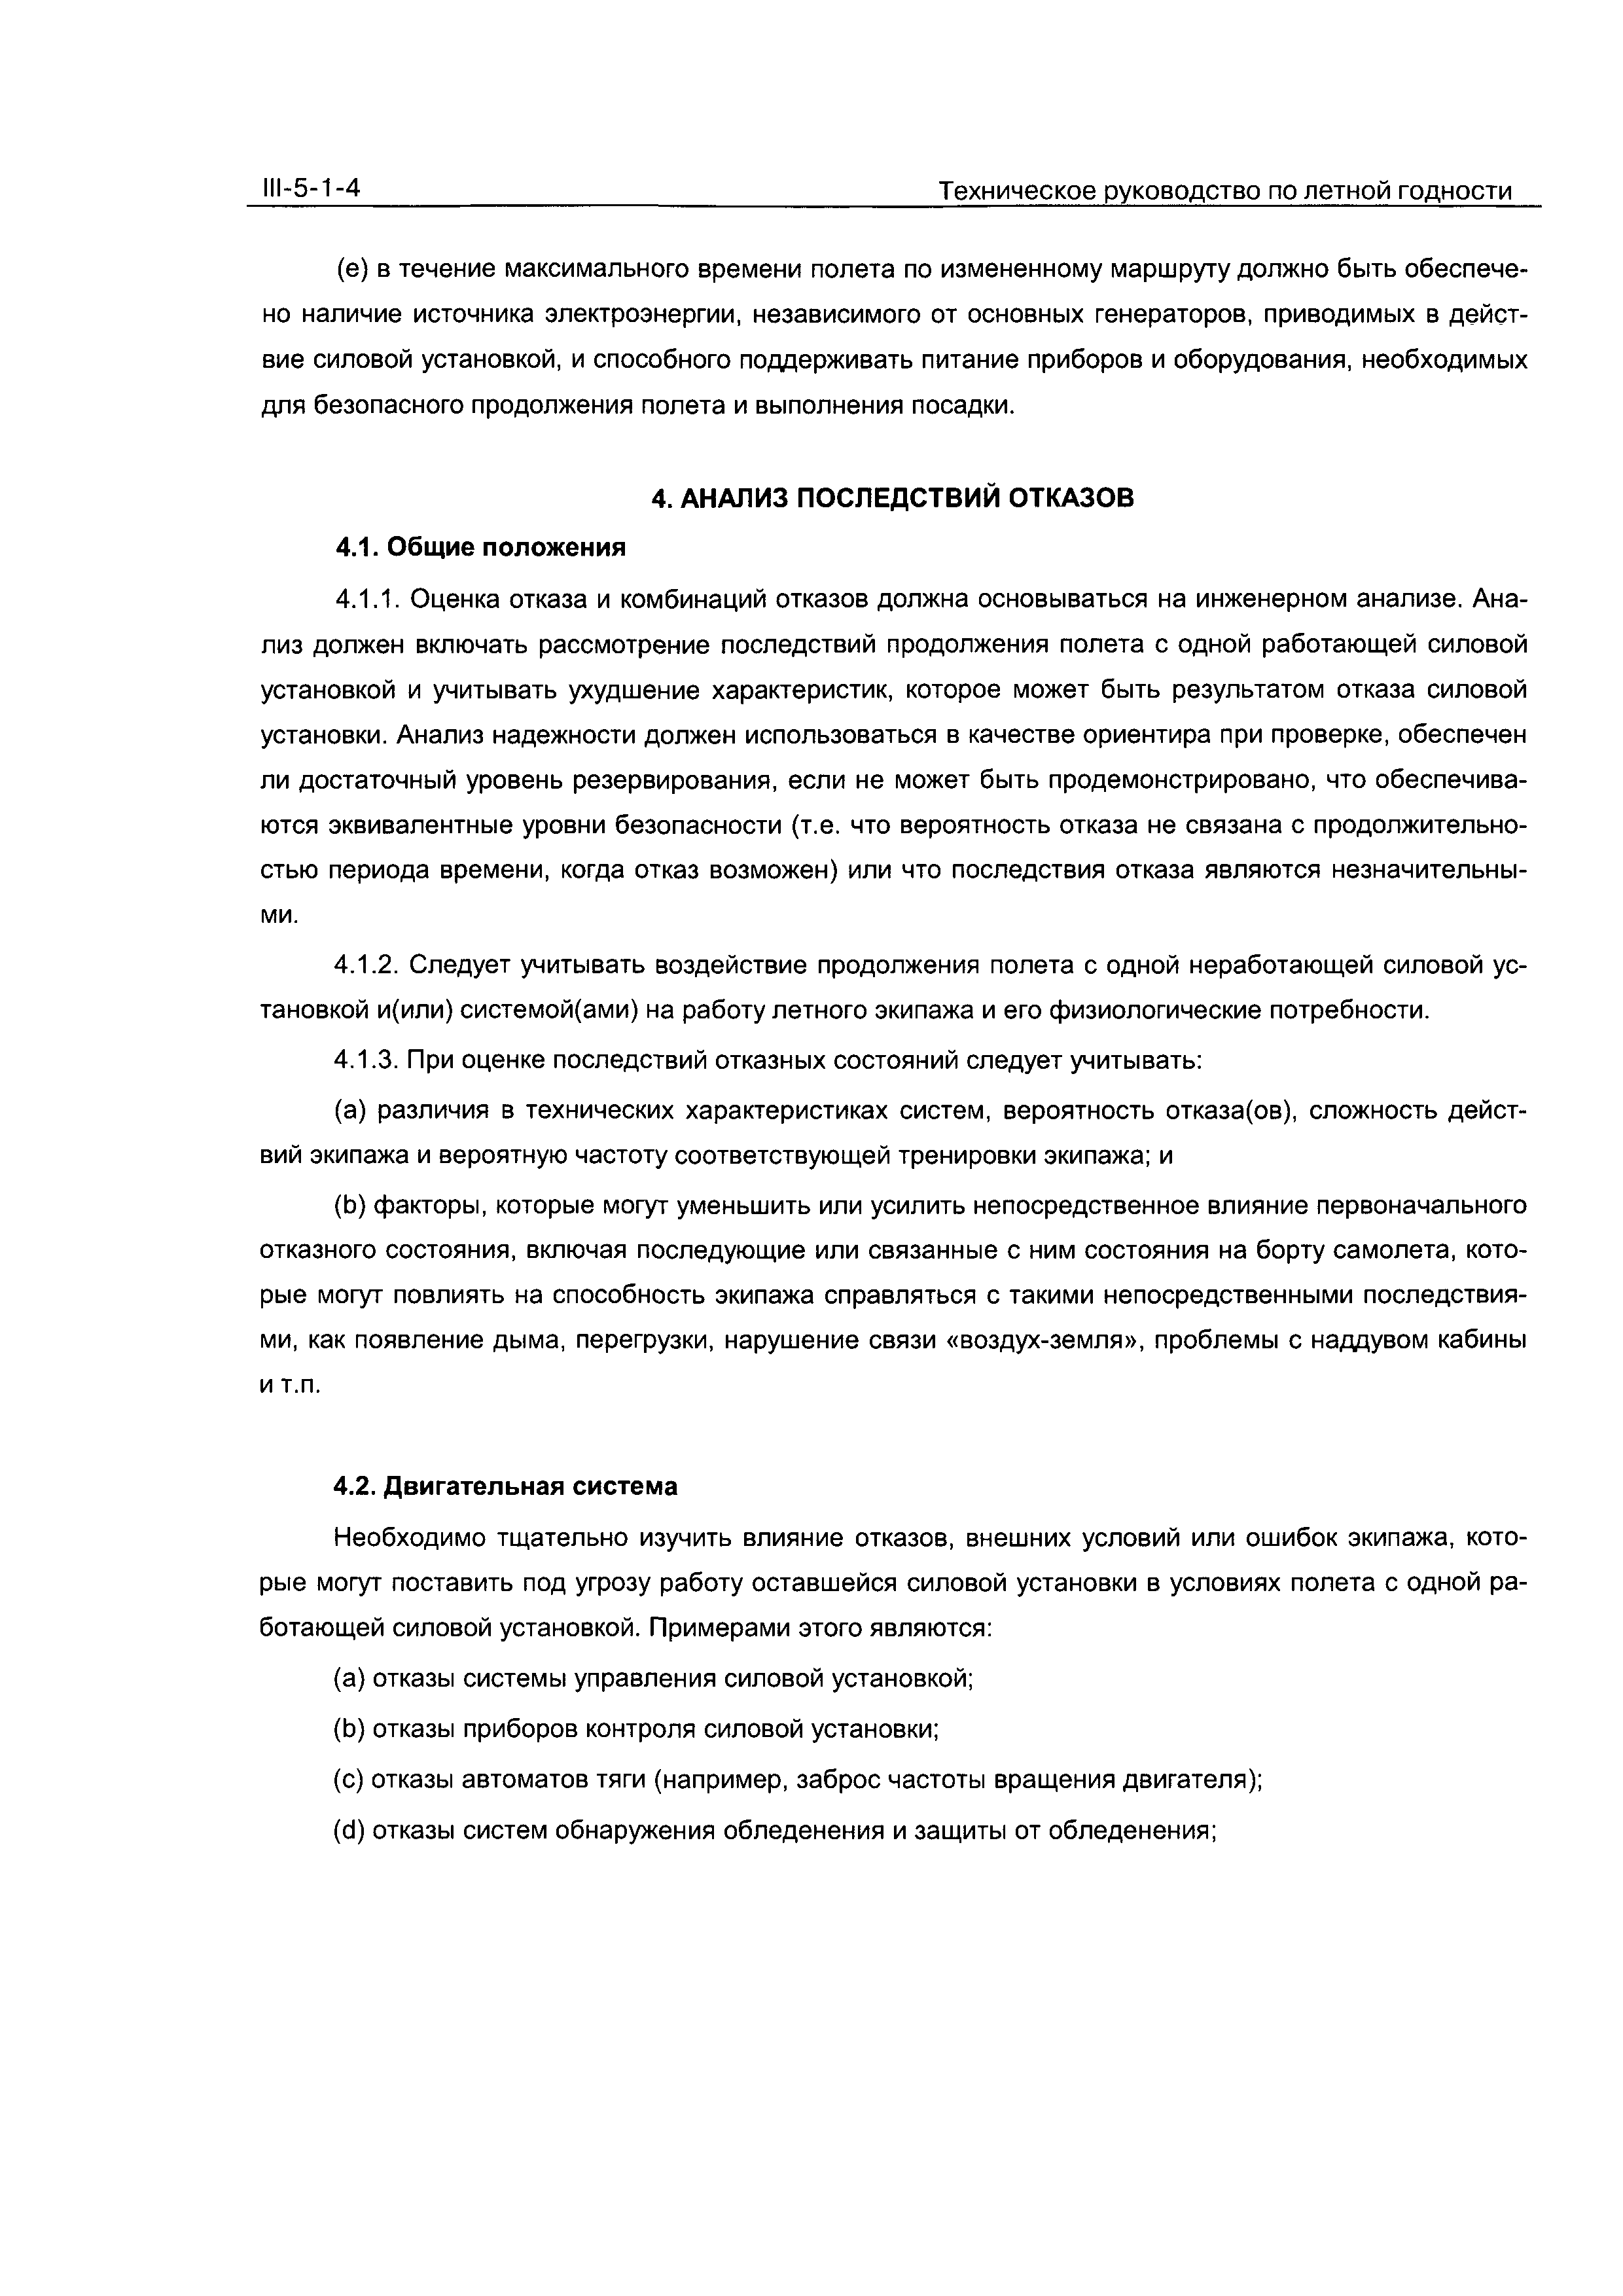 Директивное письмо 2-2000